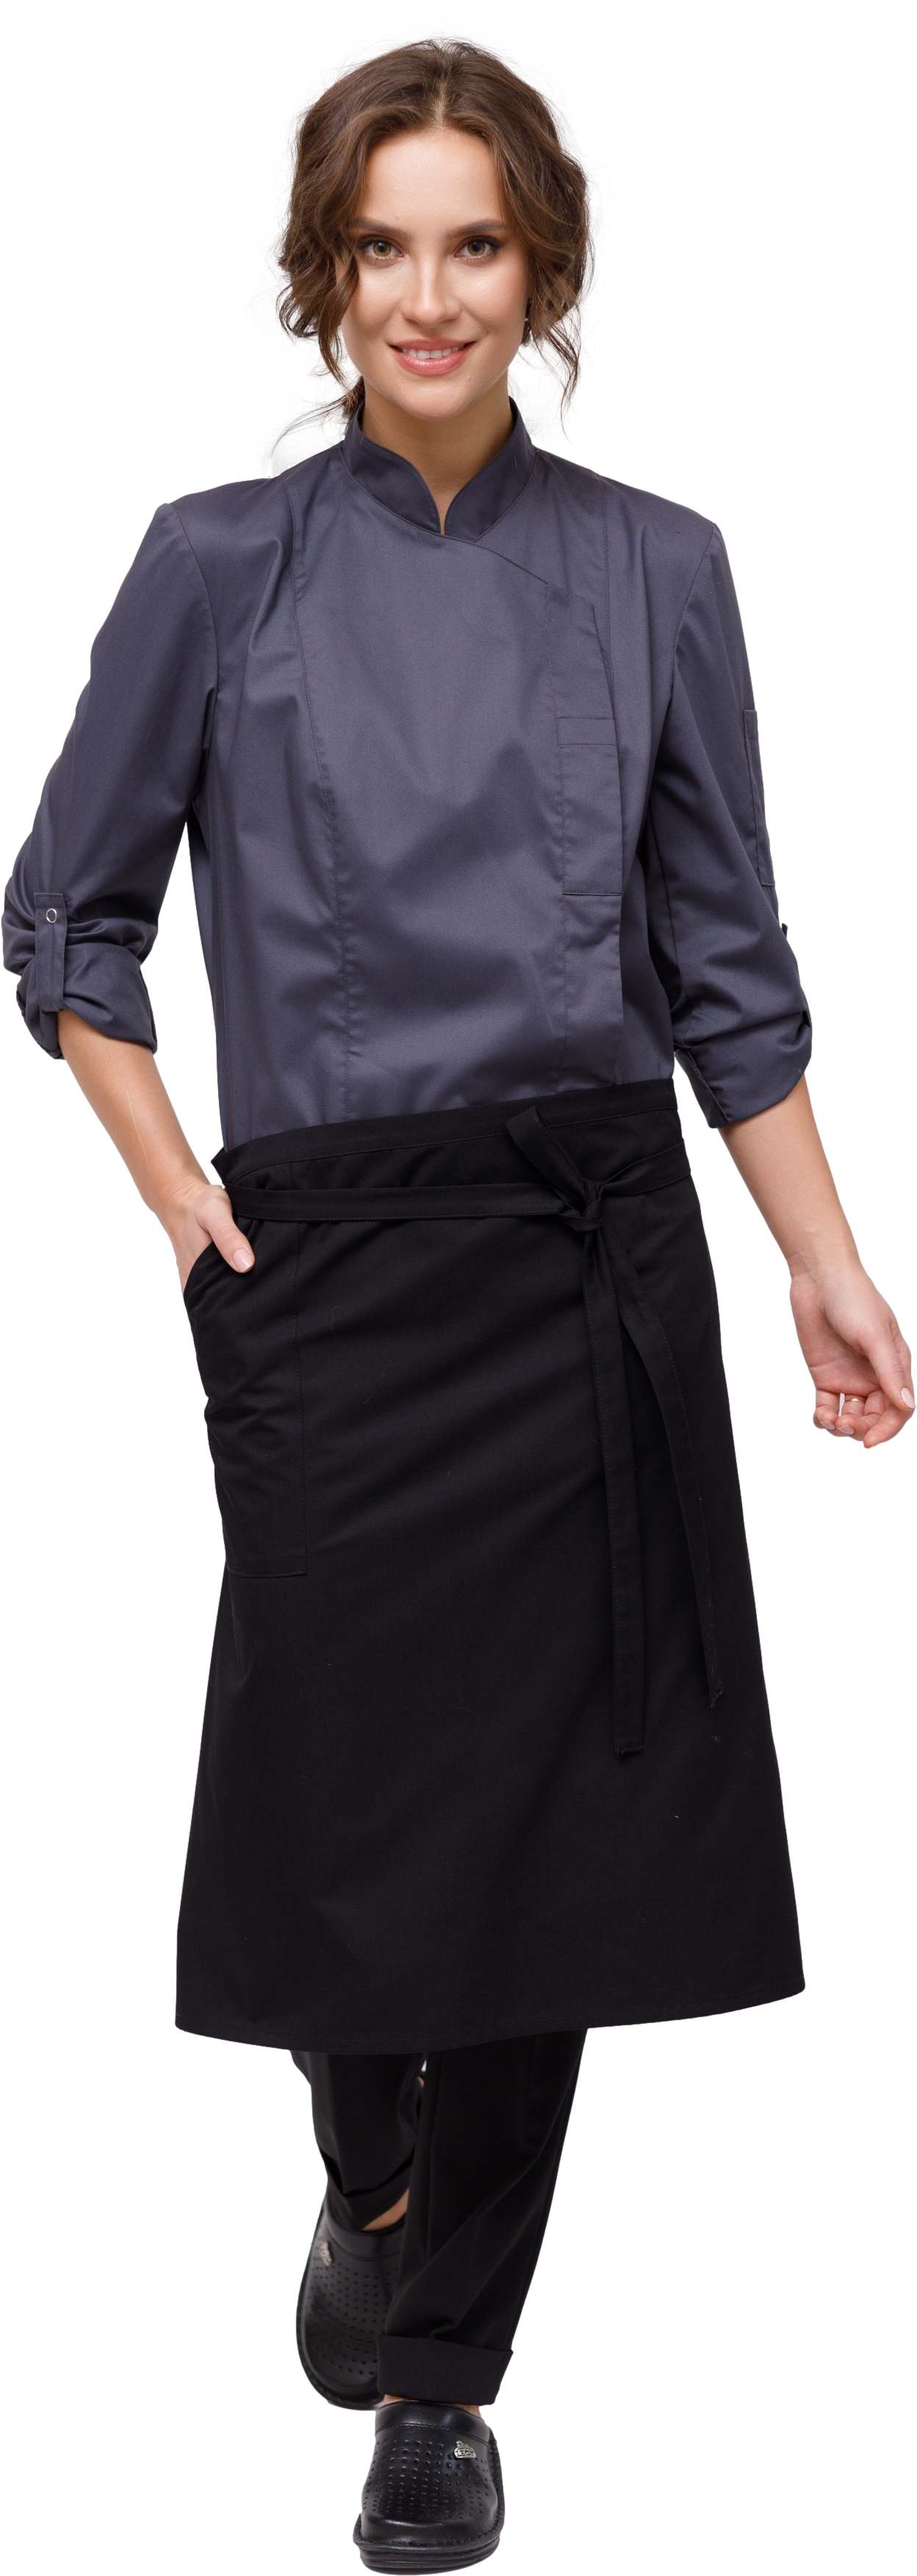 Комплект для повара LINCOLN - китель / фартук / брюки женский темно серый